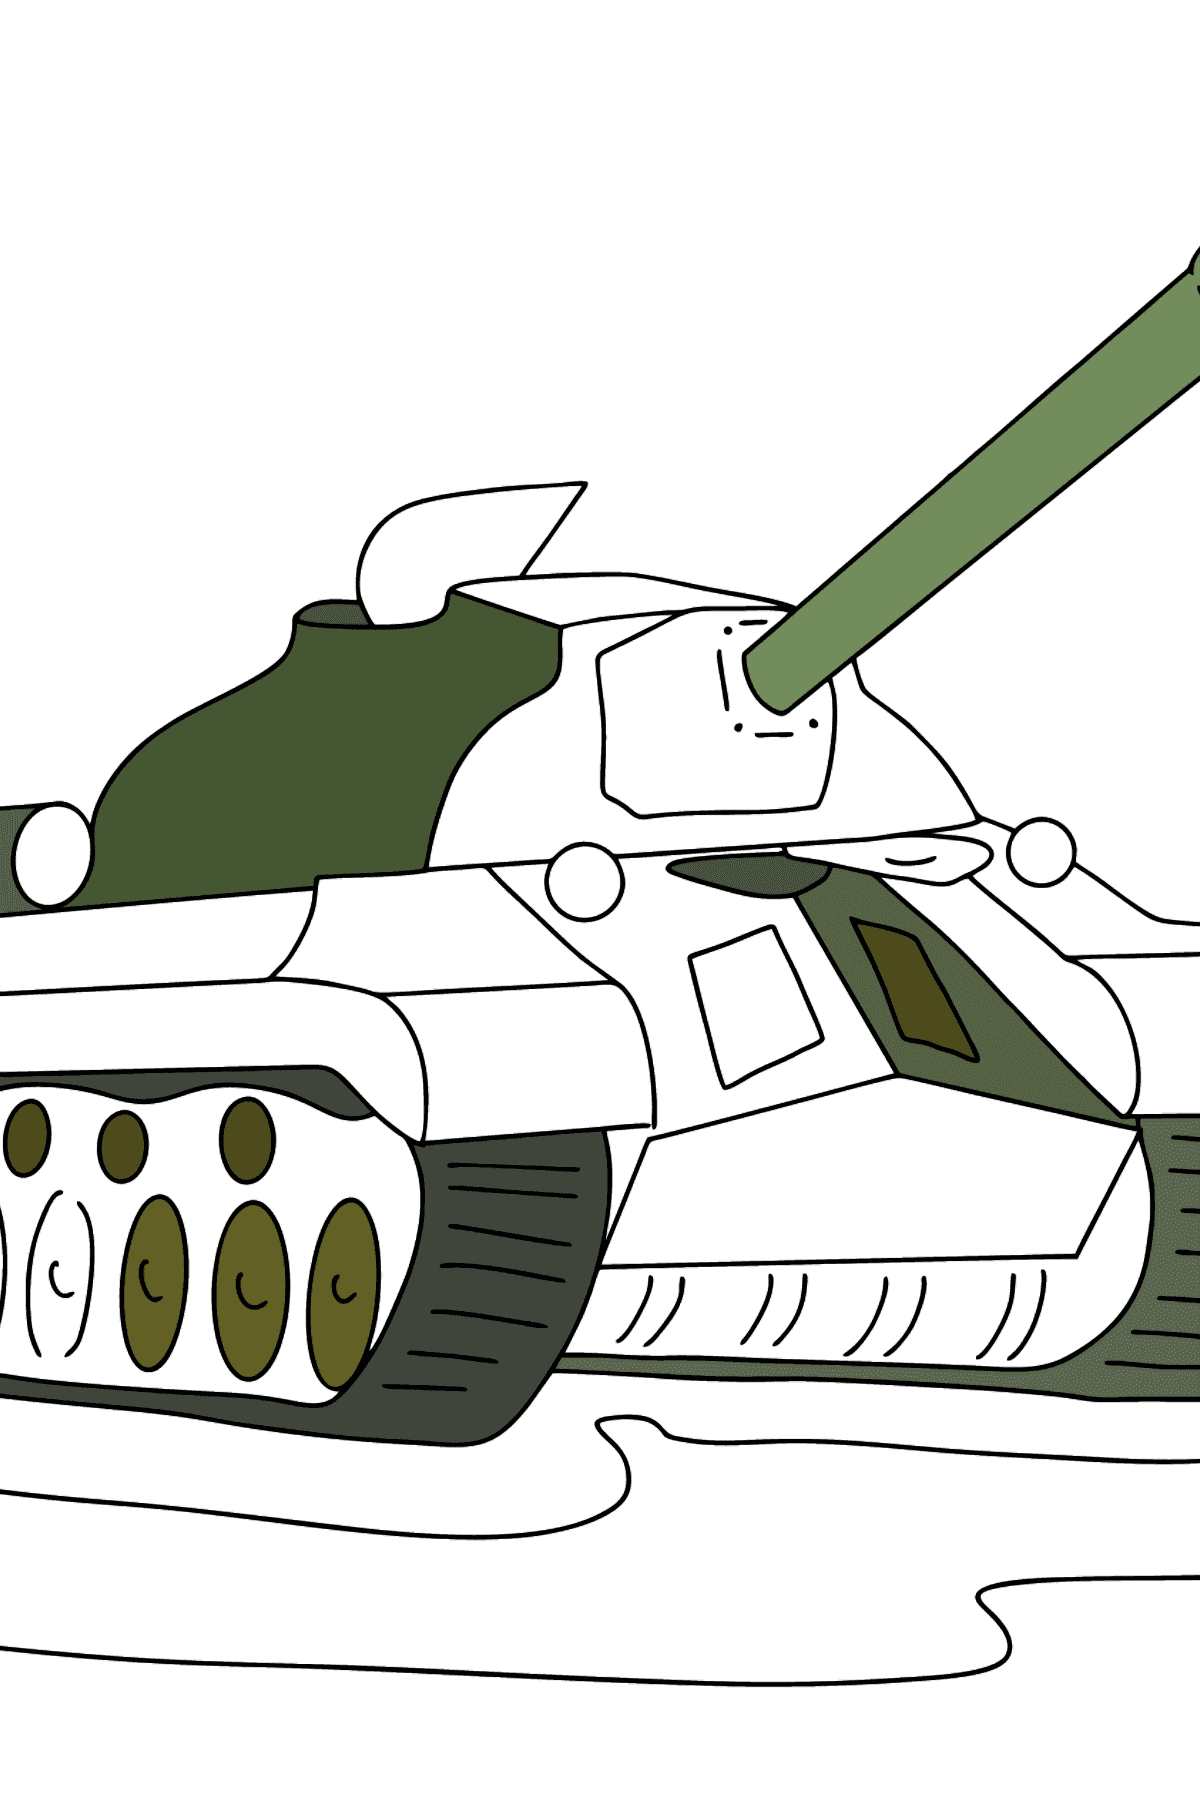 Páginas para colorir do Tank IS 3 - Imagens para Colorir para Crianças